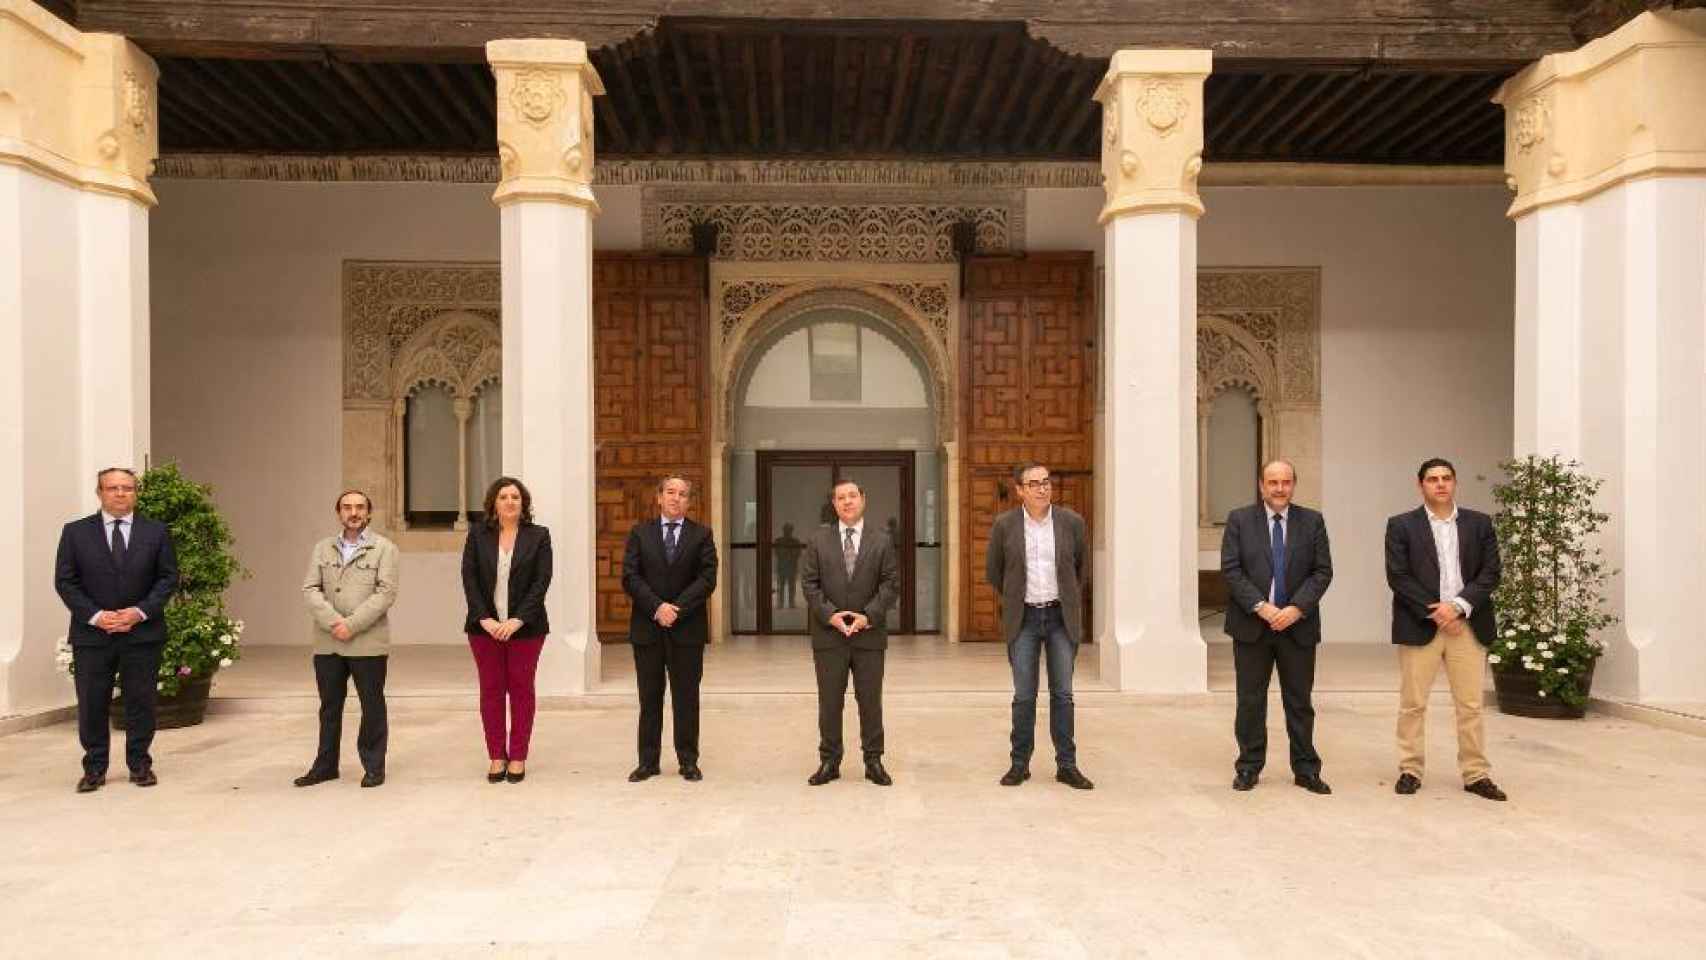 El 4 de mayo se firmó en el Palacio de Fuensalida el Plan de Medidas Extraordinarias para la Recuperación Económica de la región